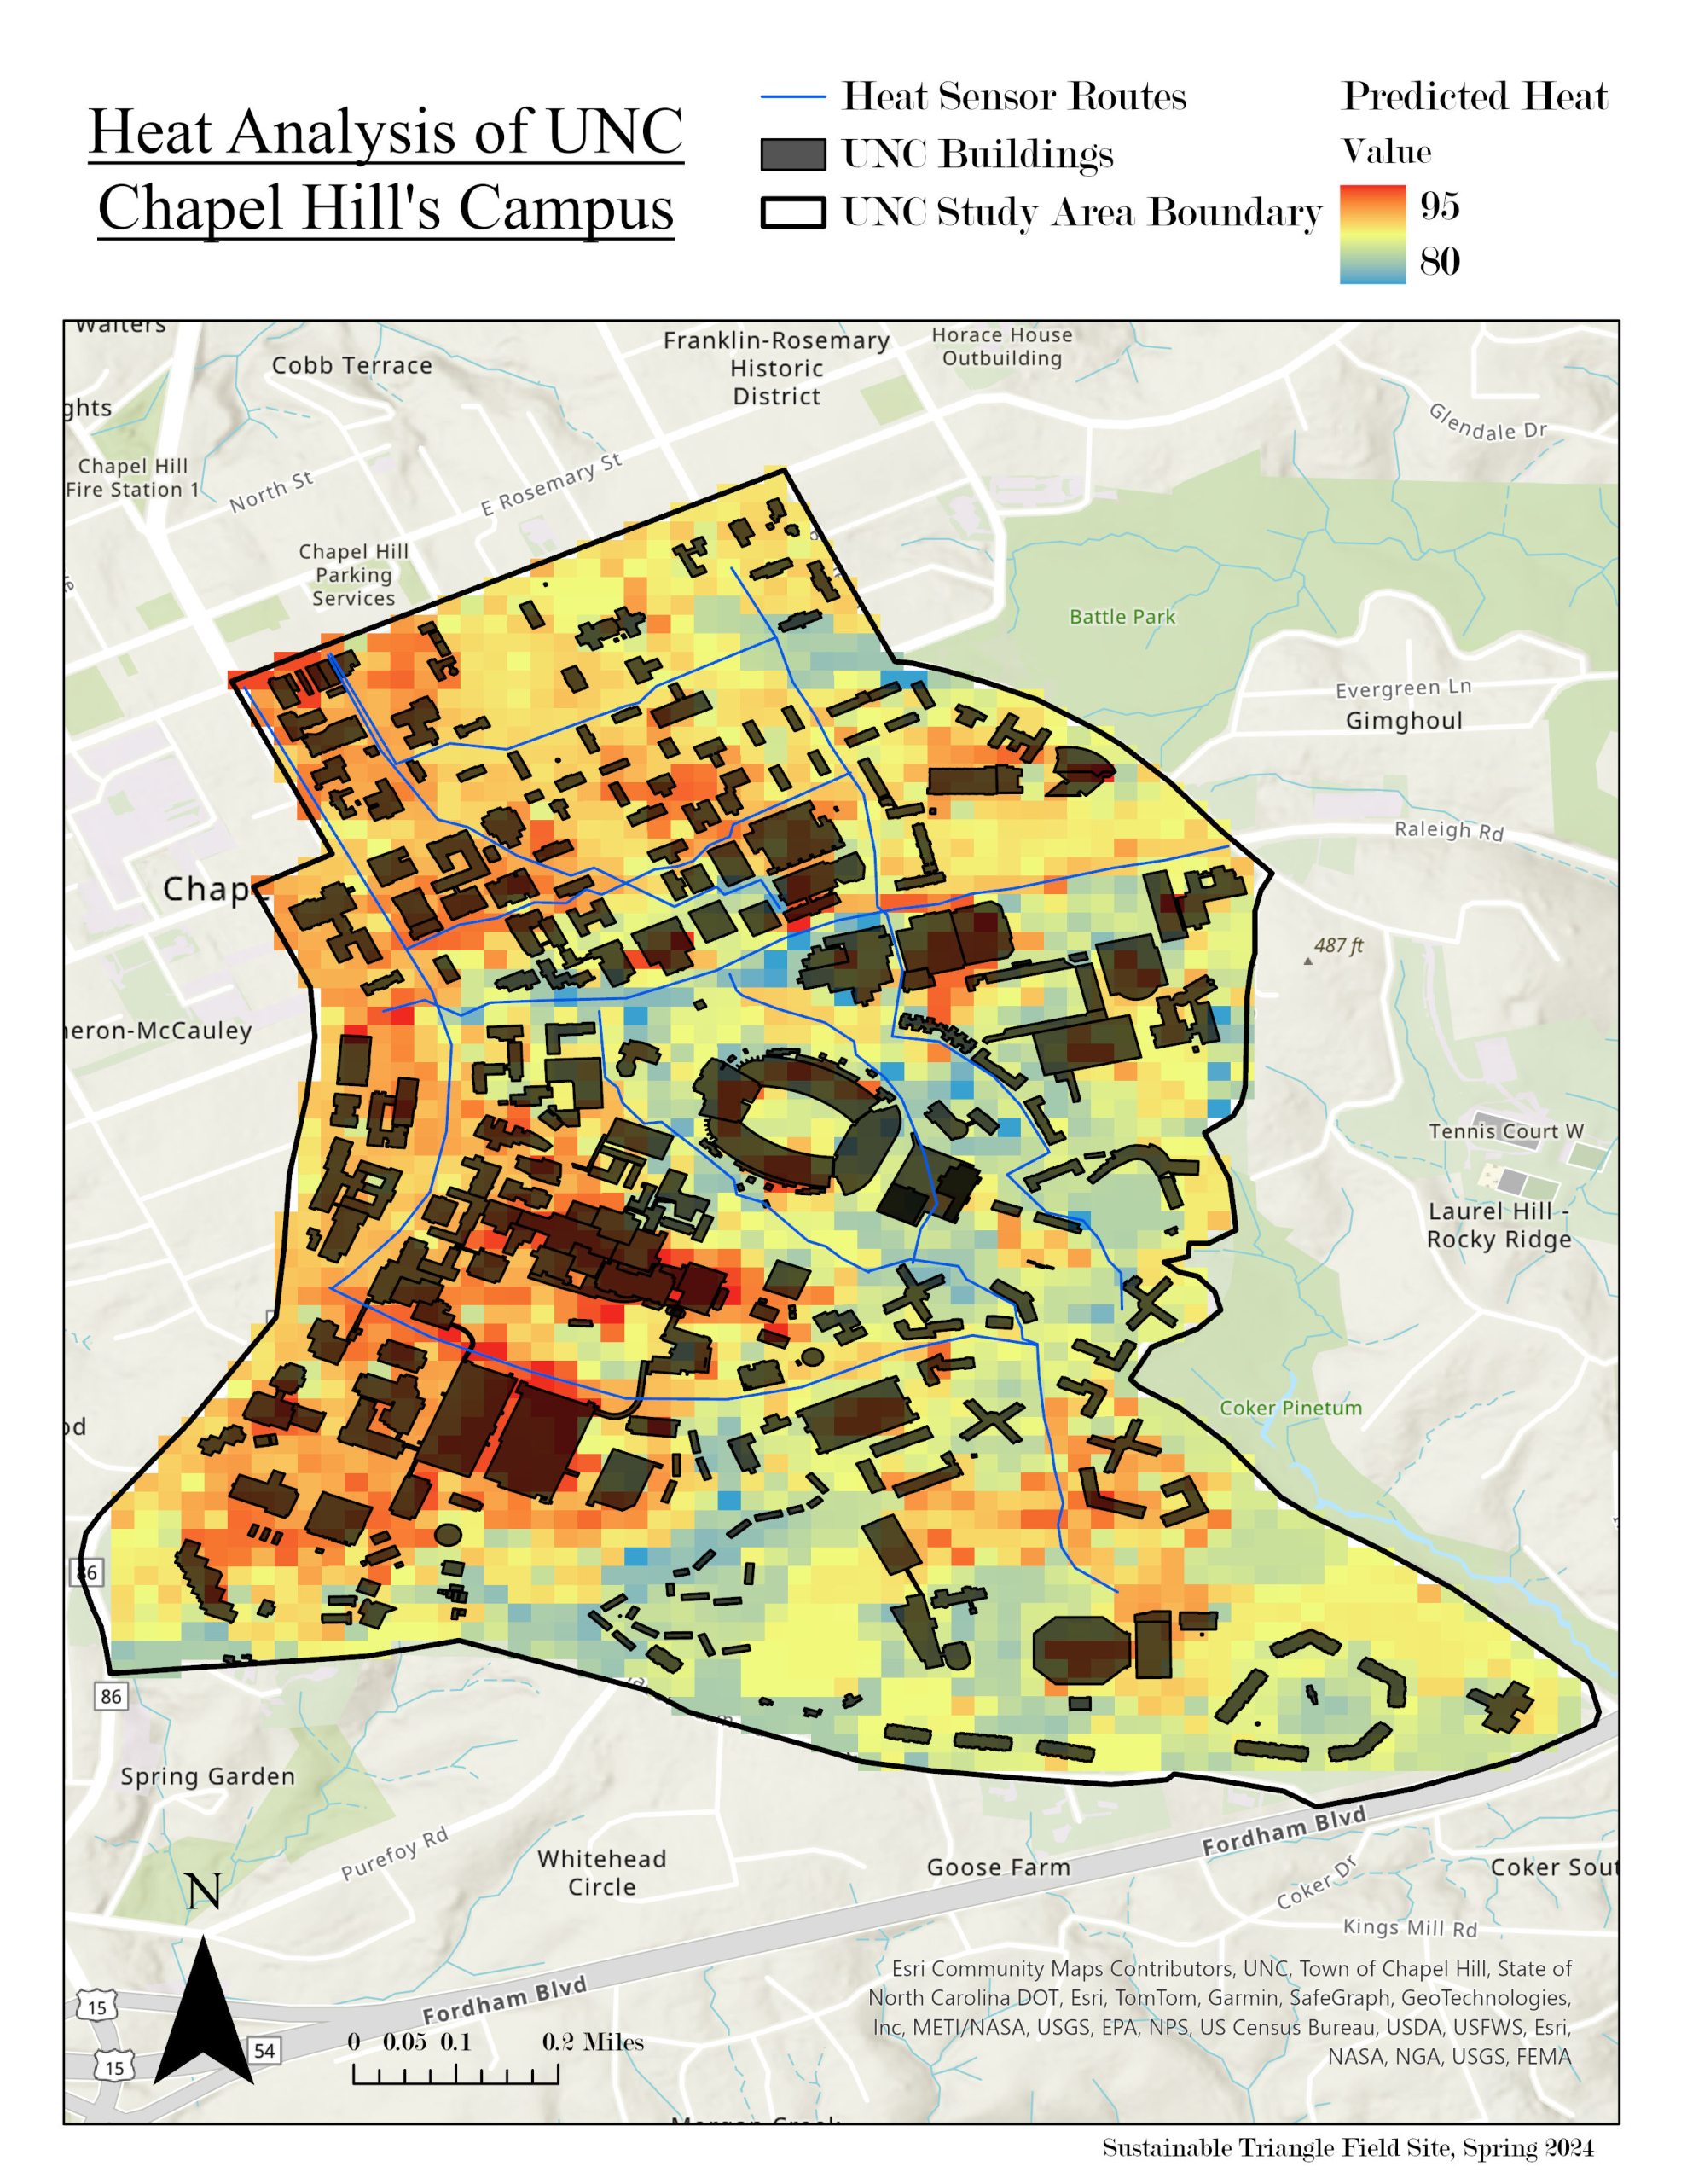 Map showing heat analysis of Carolina campus